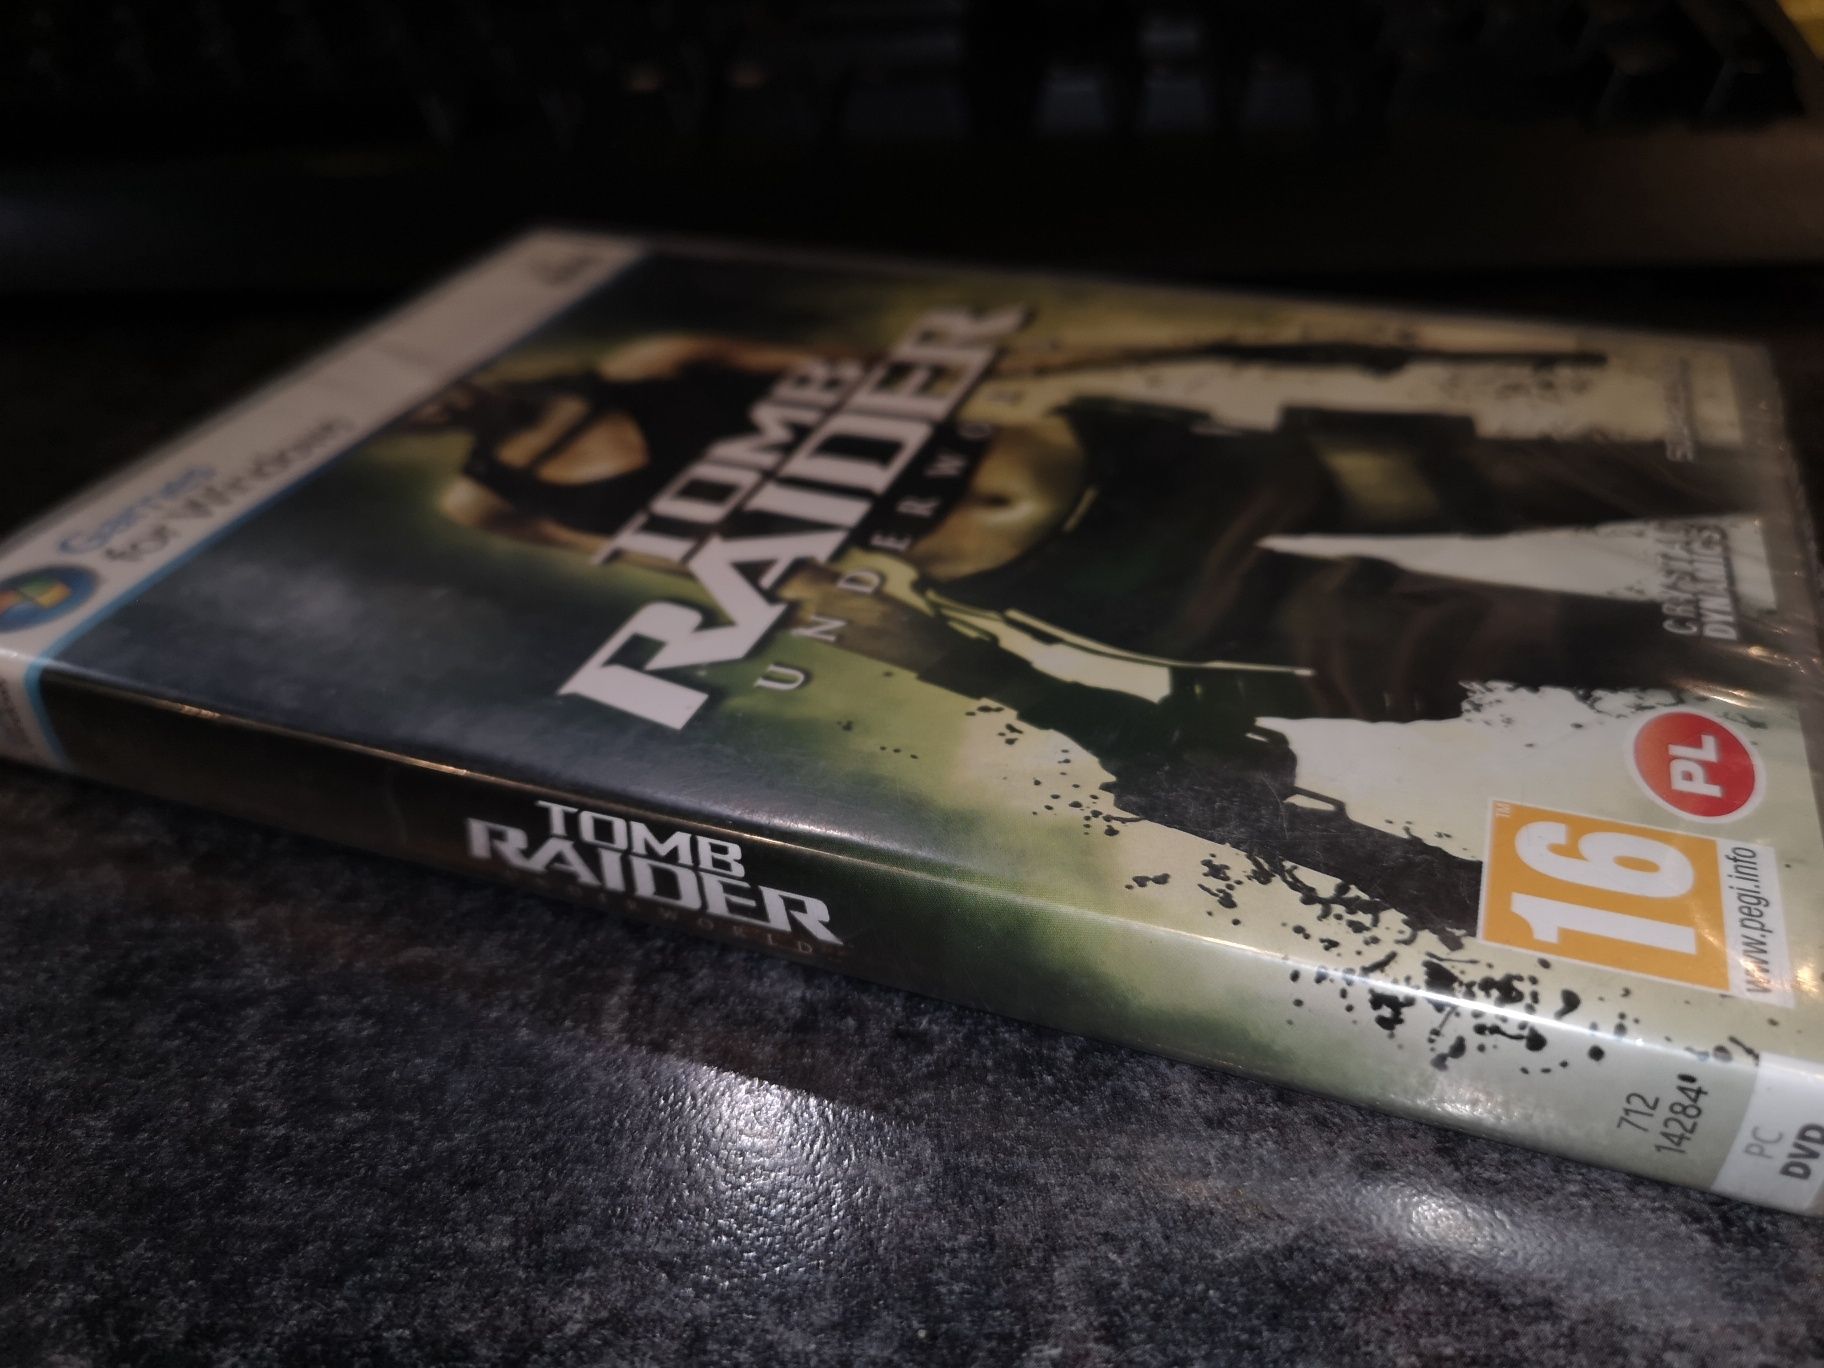 Tomb Raider Underworld PC gra PL (nowa w folii) RZADKOŚĆ NA RYNKU